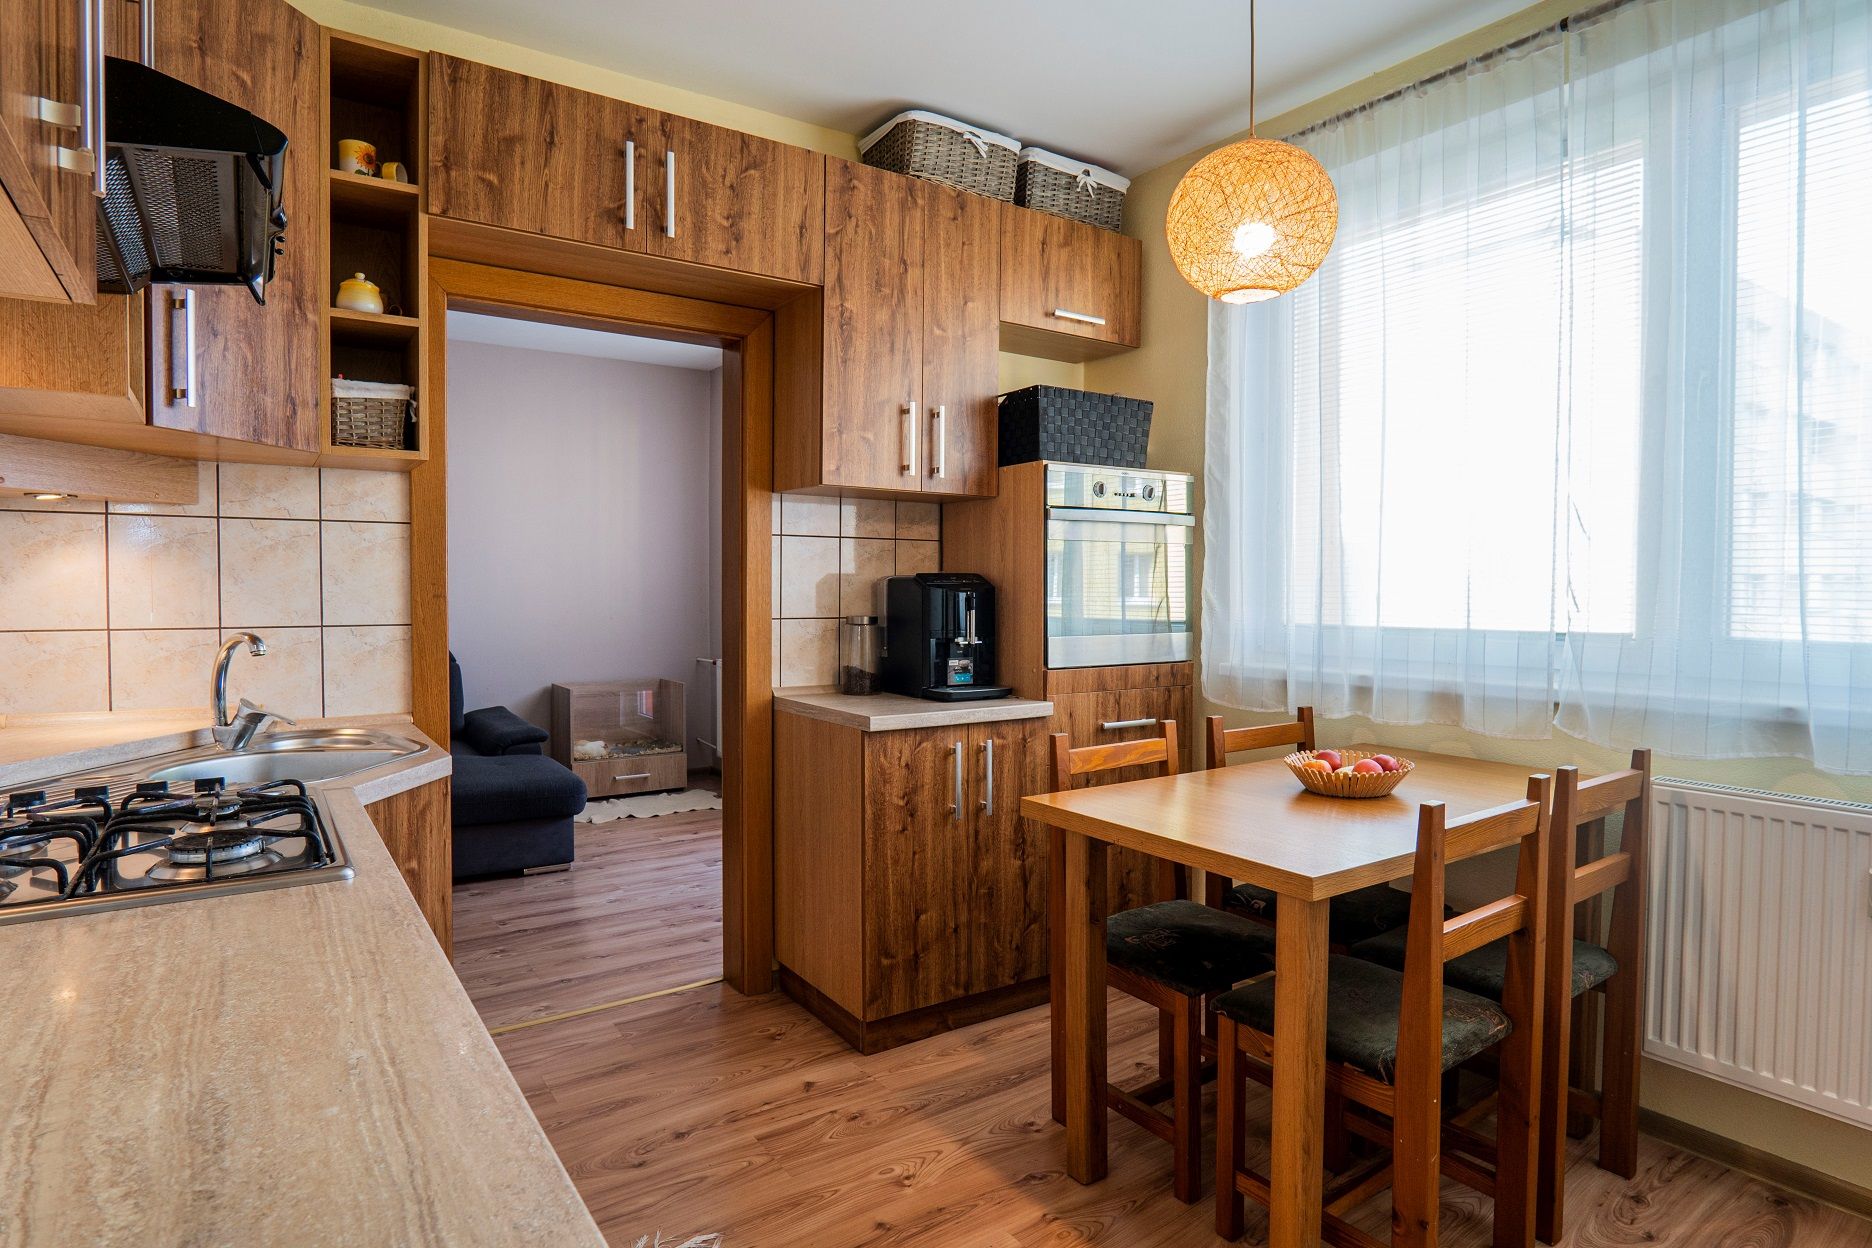 NA PREDAJ: 4-izbový kompletne zrenovovaný byt s lodžiou na sídlisku Západ v Levoči, 81 m2